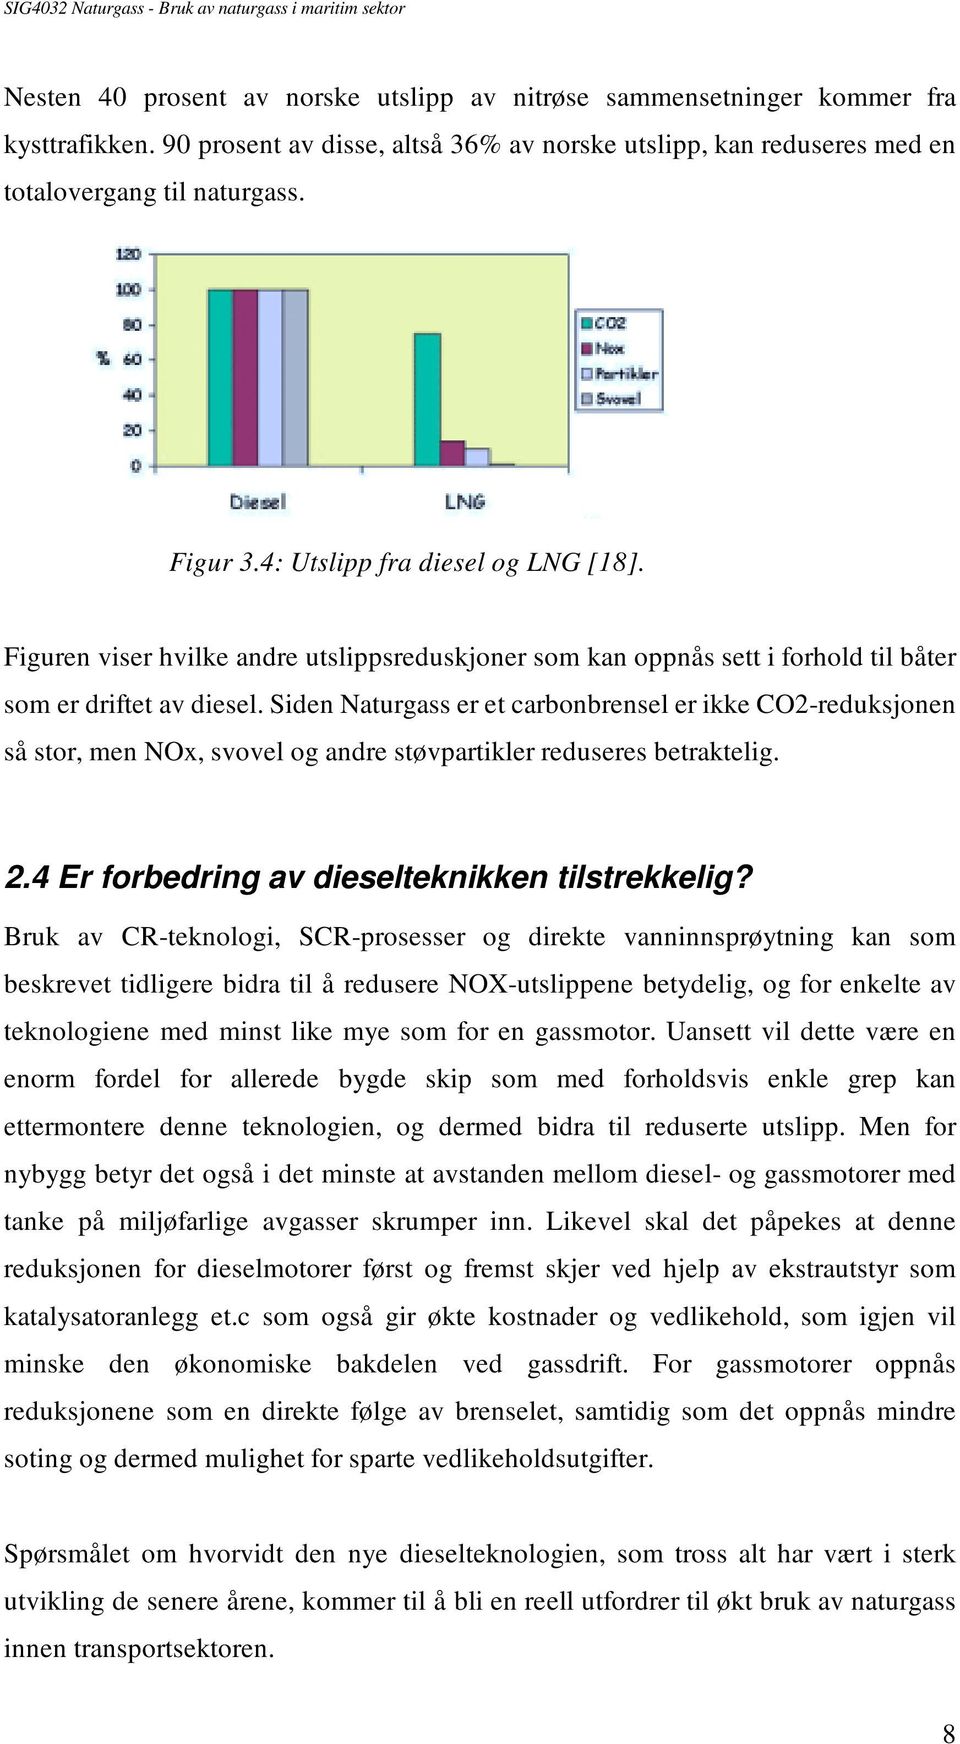 Siden Naturgass er et carbonbrensel er ikke CO2-reduksjonen så stor, men NOx, svovel og andre støvpartikler reduseres betraktelig. 2.4 Er forbedring av dieselteknikken tilstrekkelig?